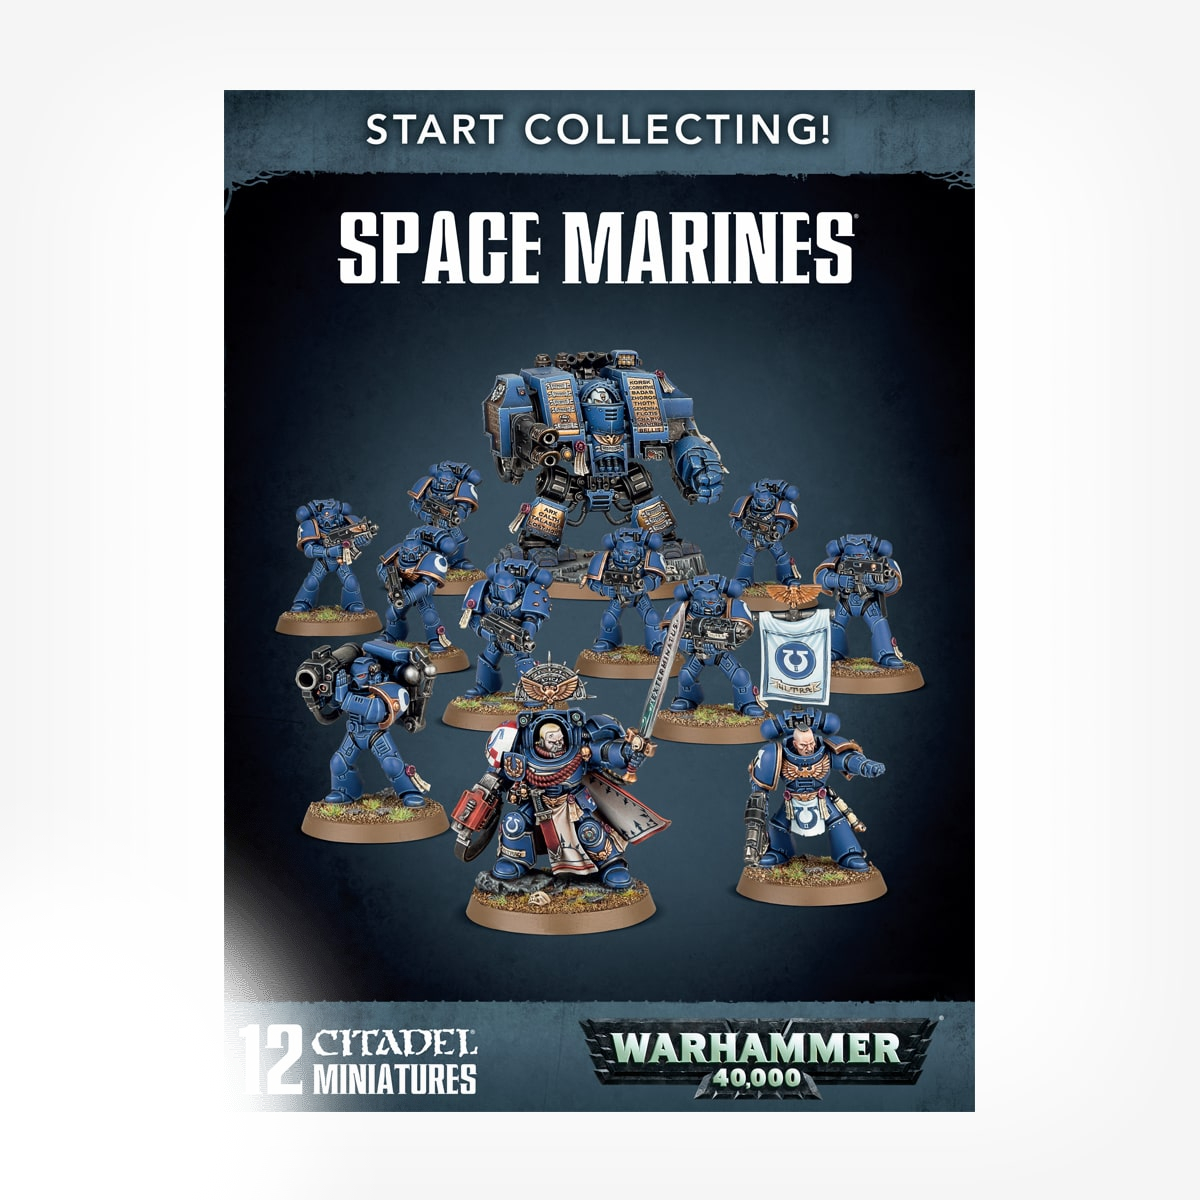 Start collection. Warhammer 40k start collecting Space Marines. Vanguard Space Marine start. Start collecting! Vanguard Space Marines. Старт коллектинг Спейс Марины.